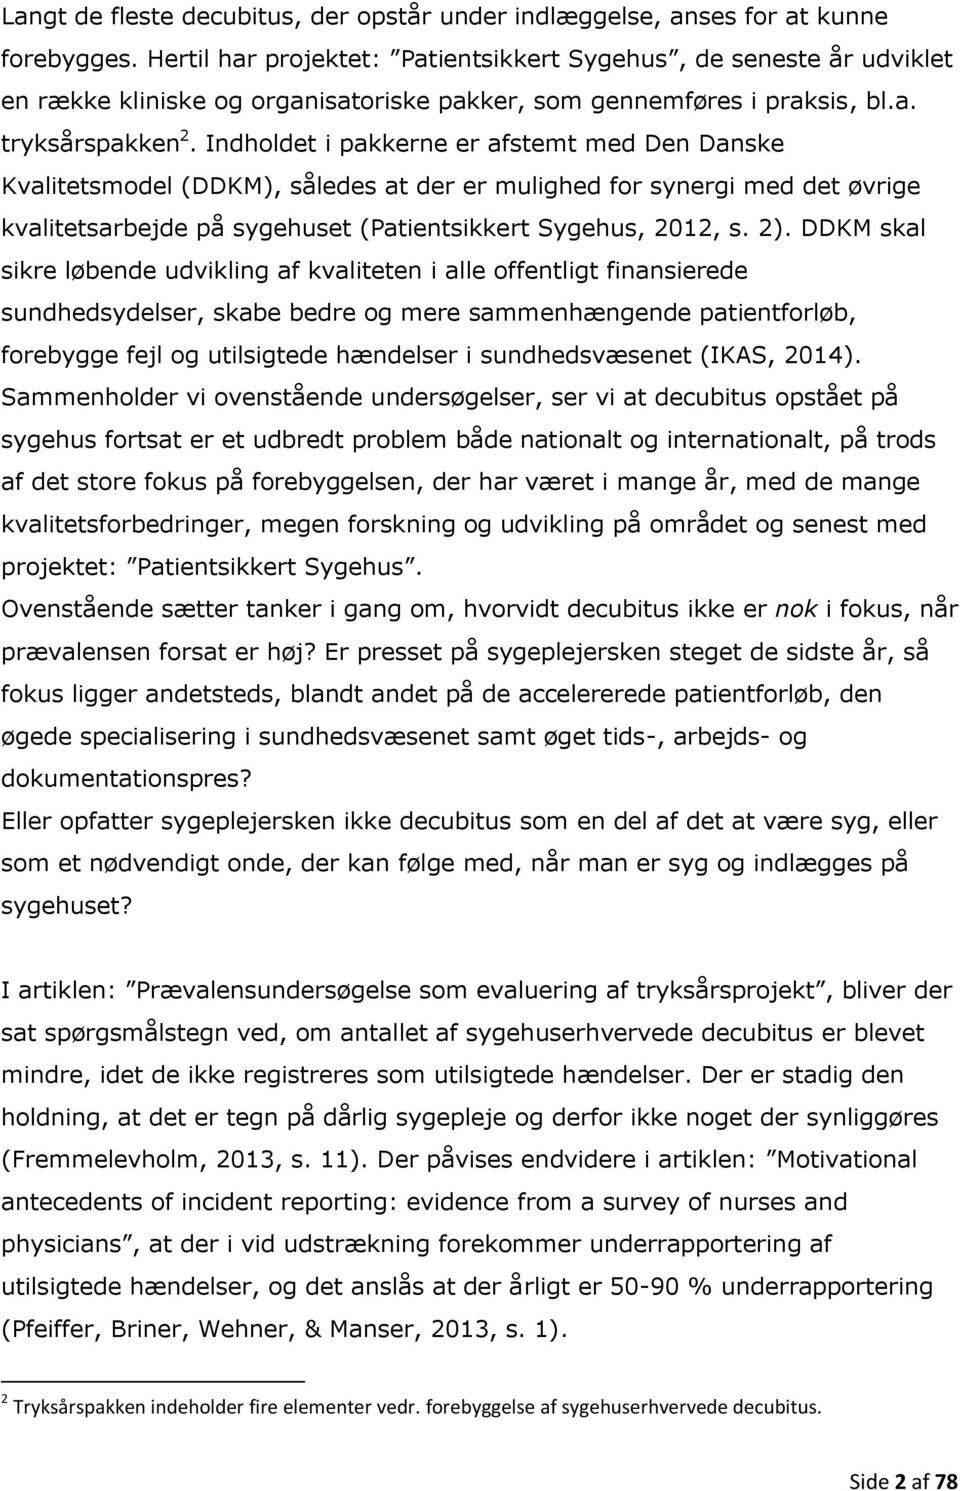 Indholdet i pakkerne er afstemt med Den Danske Kvalitetsmodel (DDKM), således at der er mulighed for synergi med det øvrige kvalitetsarbejde på sygehuset (Patientsikkert Sygehus, 2012, s. 2).